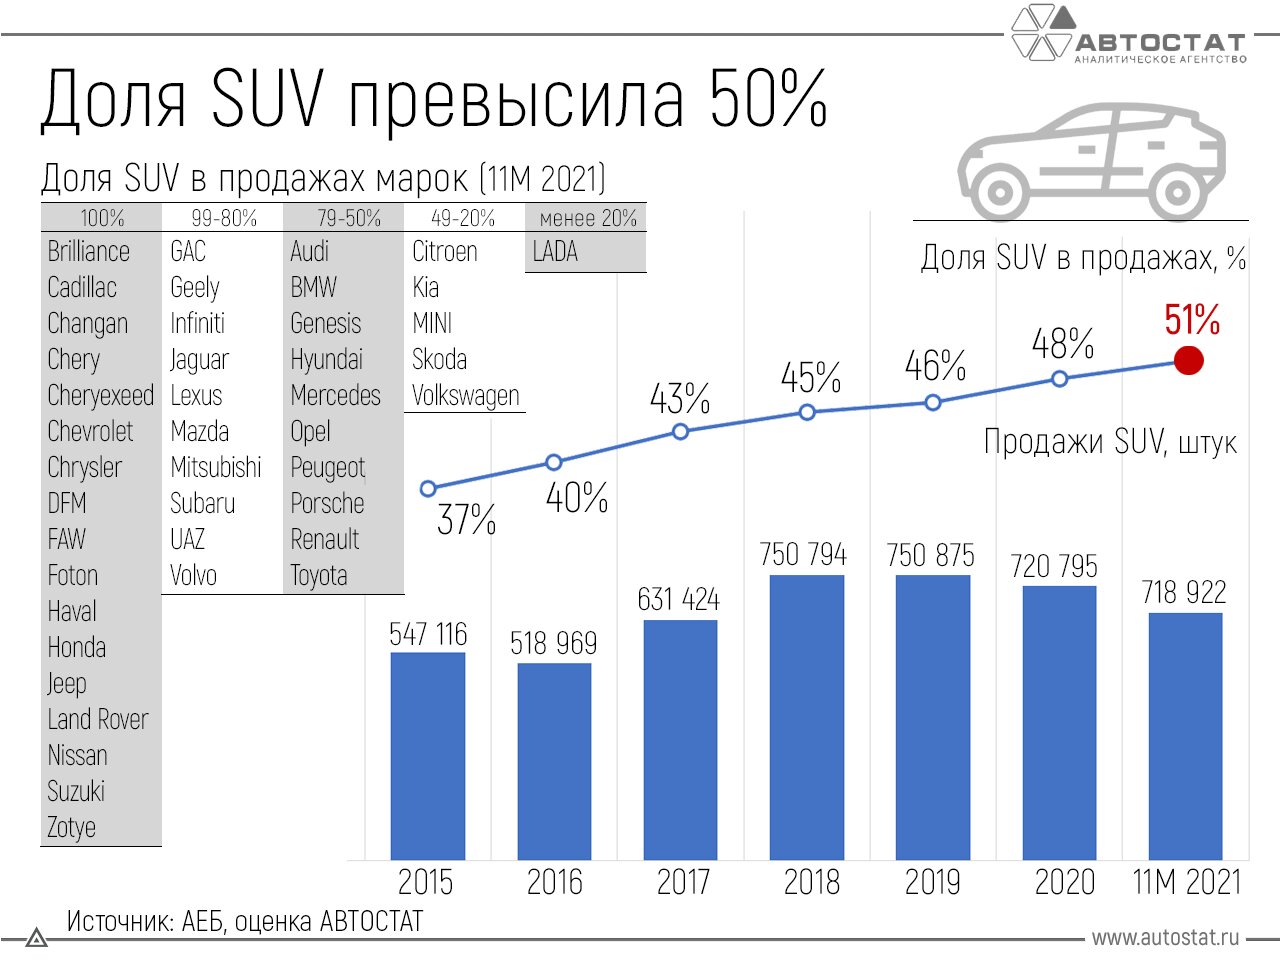 Более половины проданных авто в РФ - это кроссоверы и внедорожники